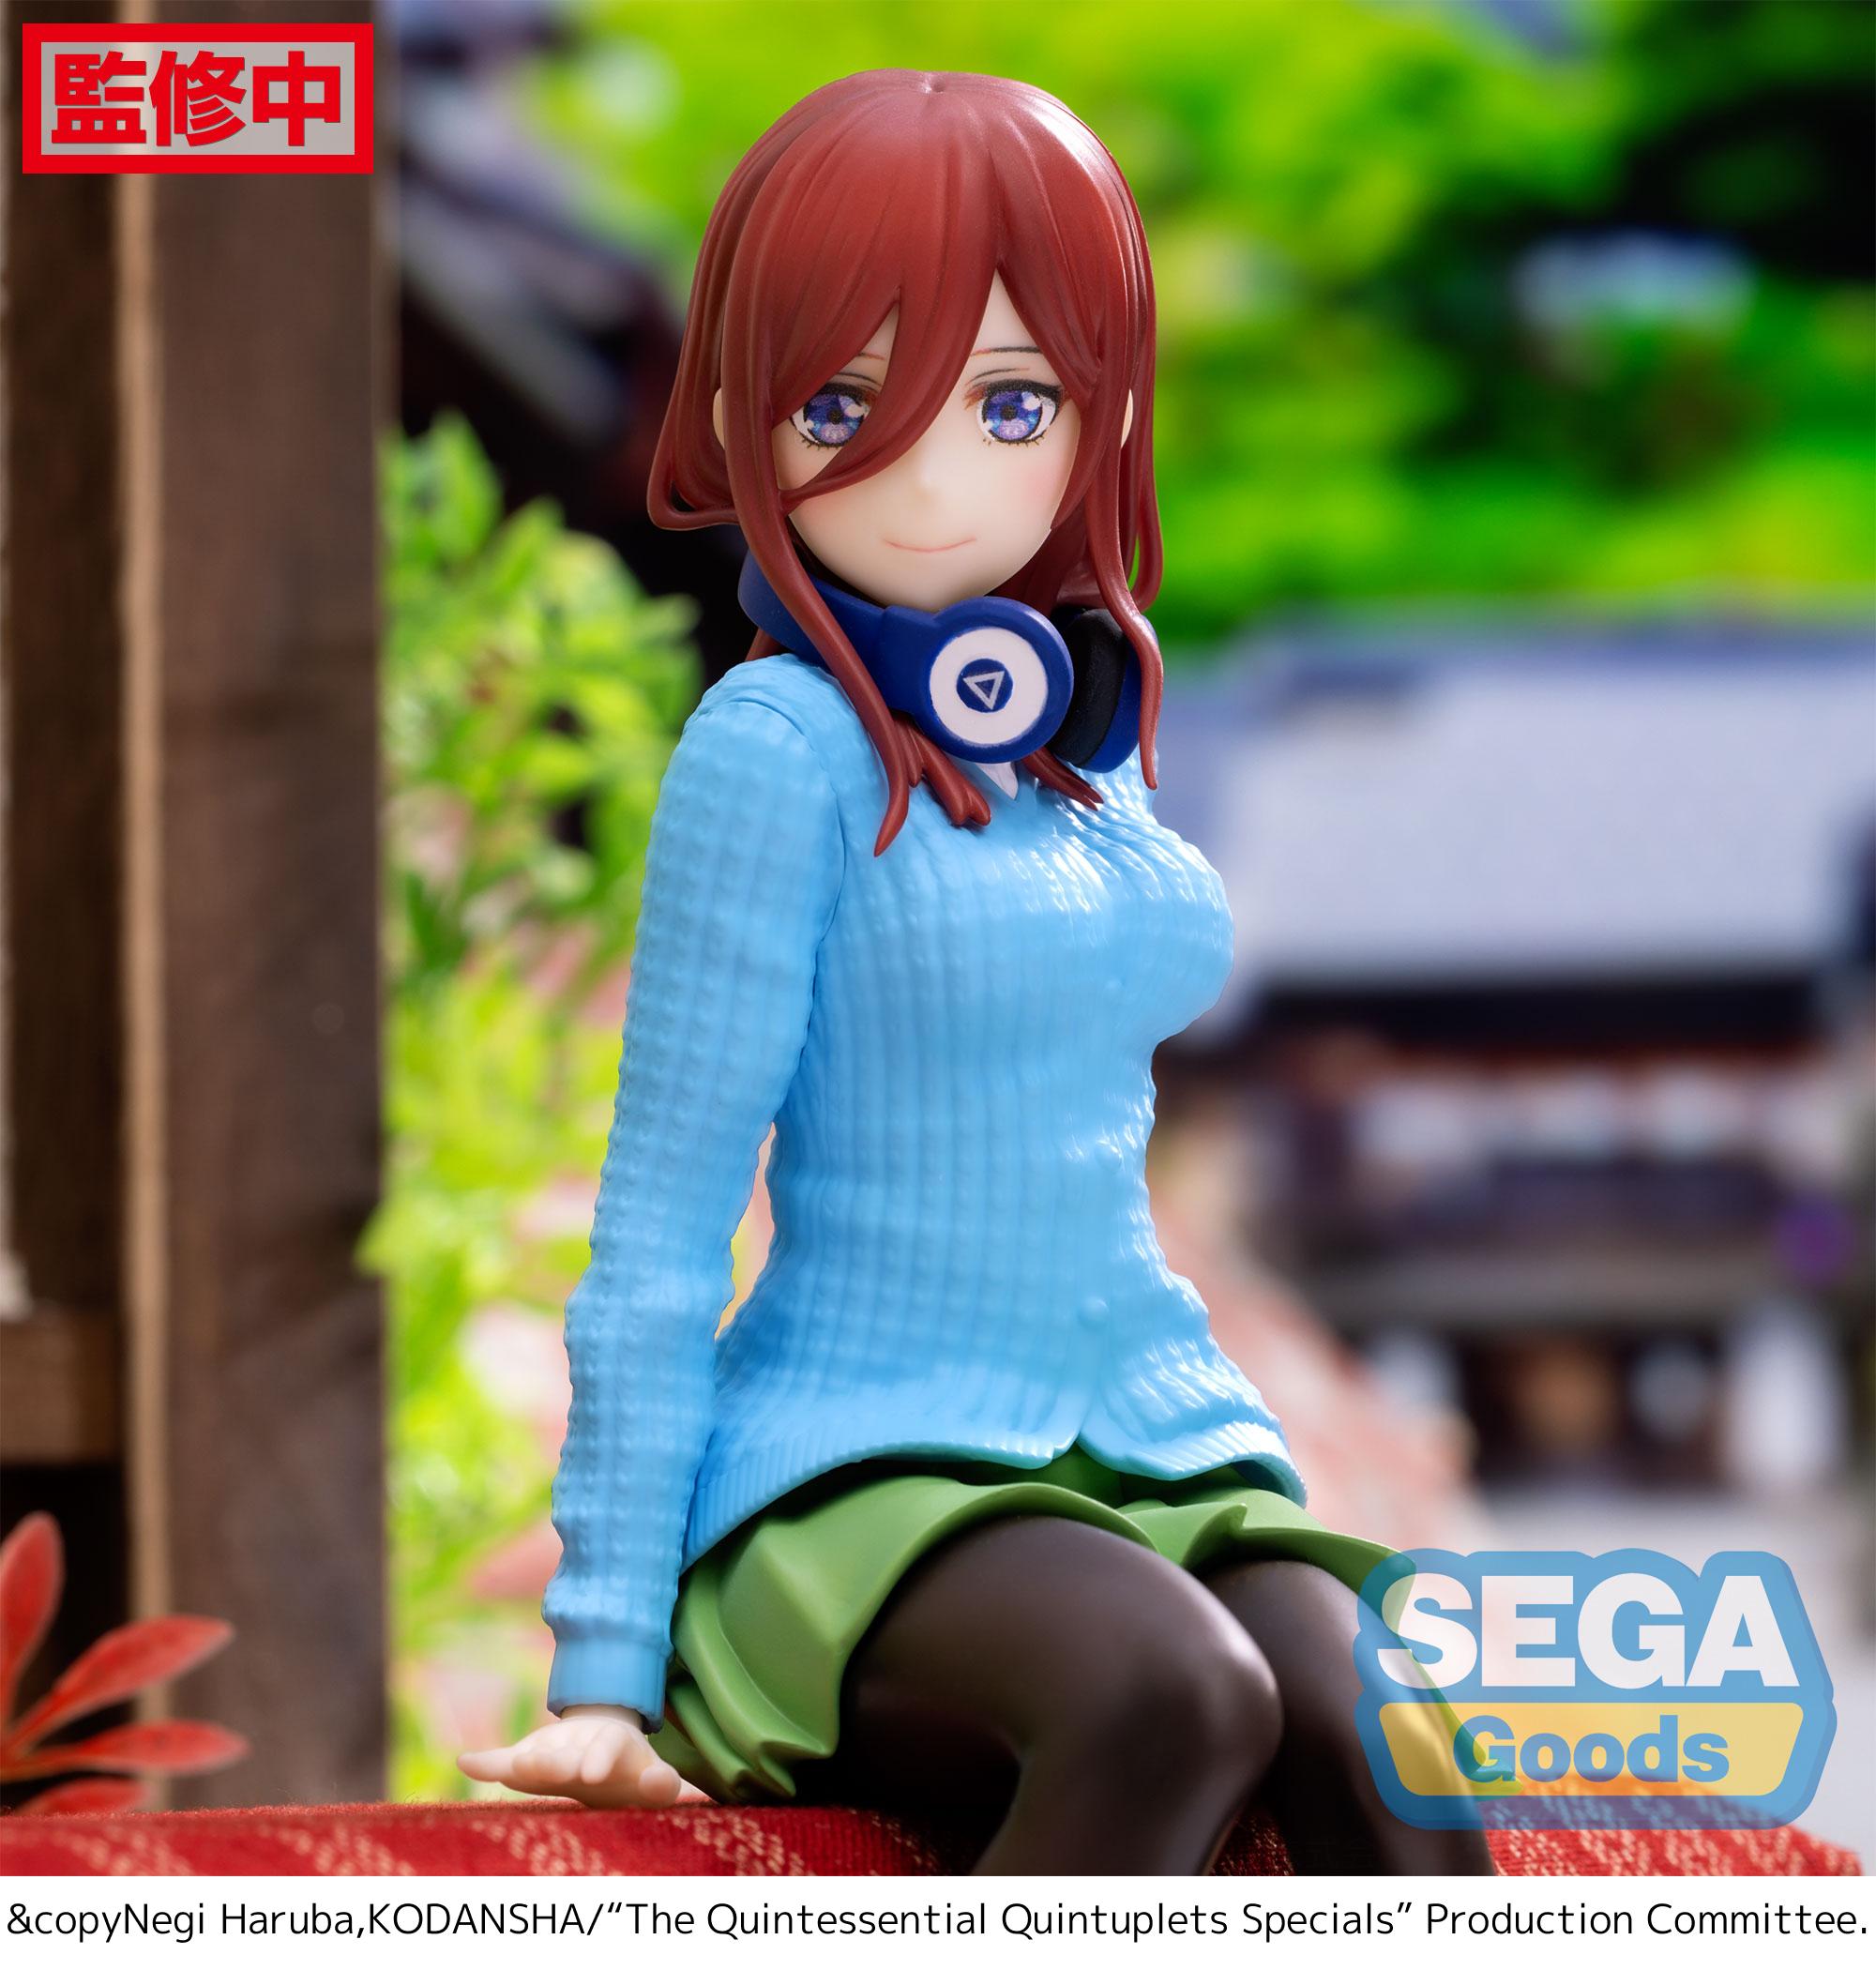 Sega Figures Specials Premium Perching: The Quintessential Quintuplets - Miku Nakano